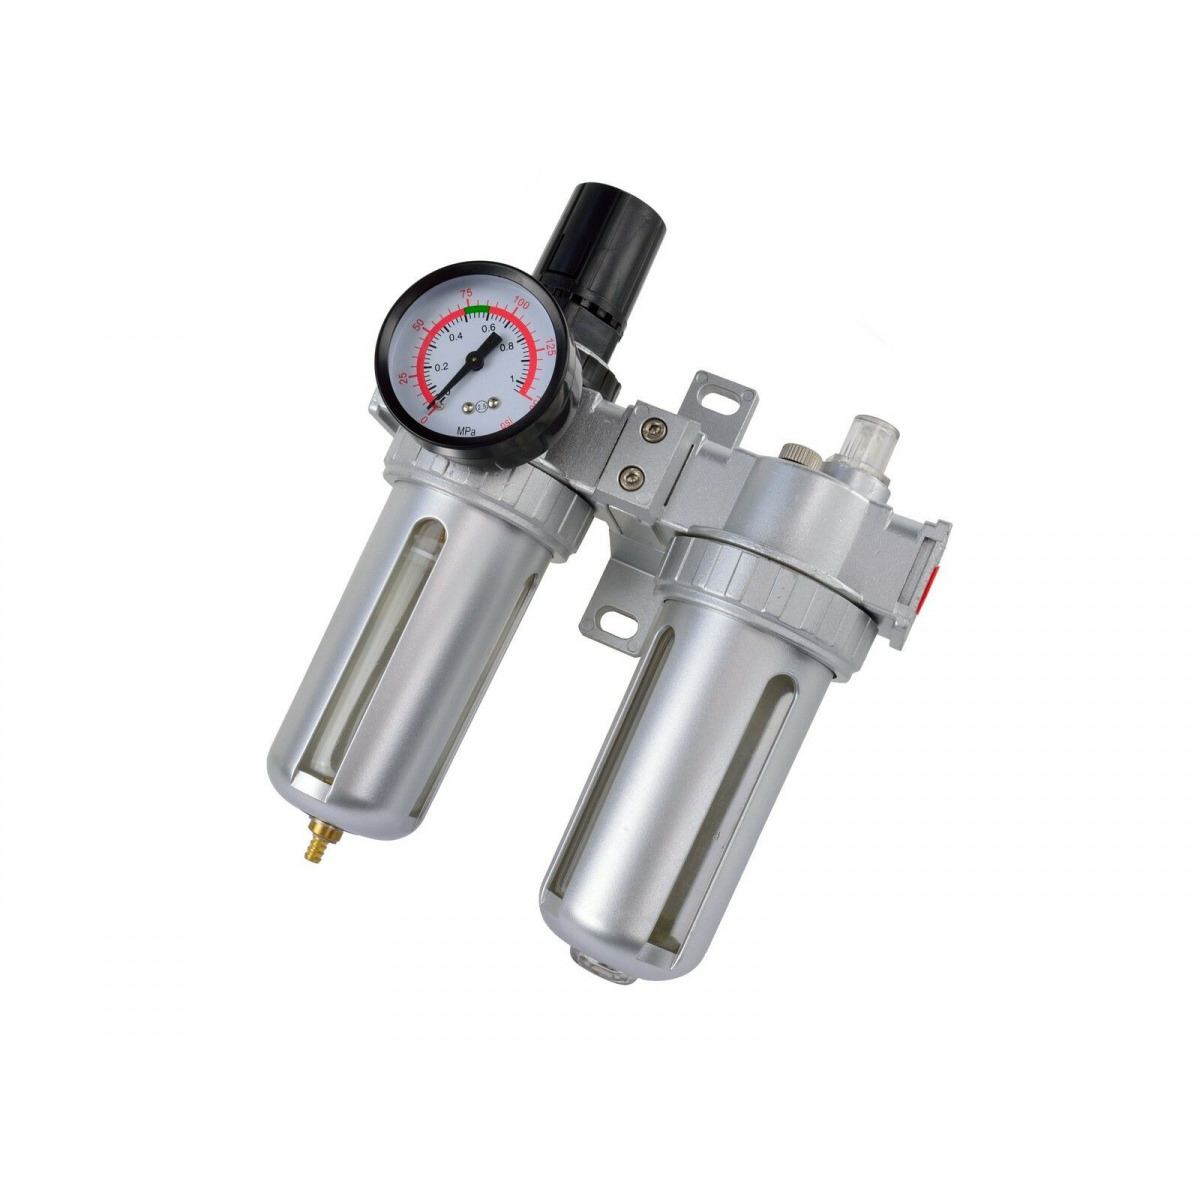 Regulátor tlaku GEKO s filtrem a manometrem a přim. oleje, max. prac. tlak 10bar